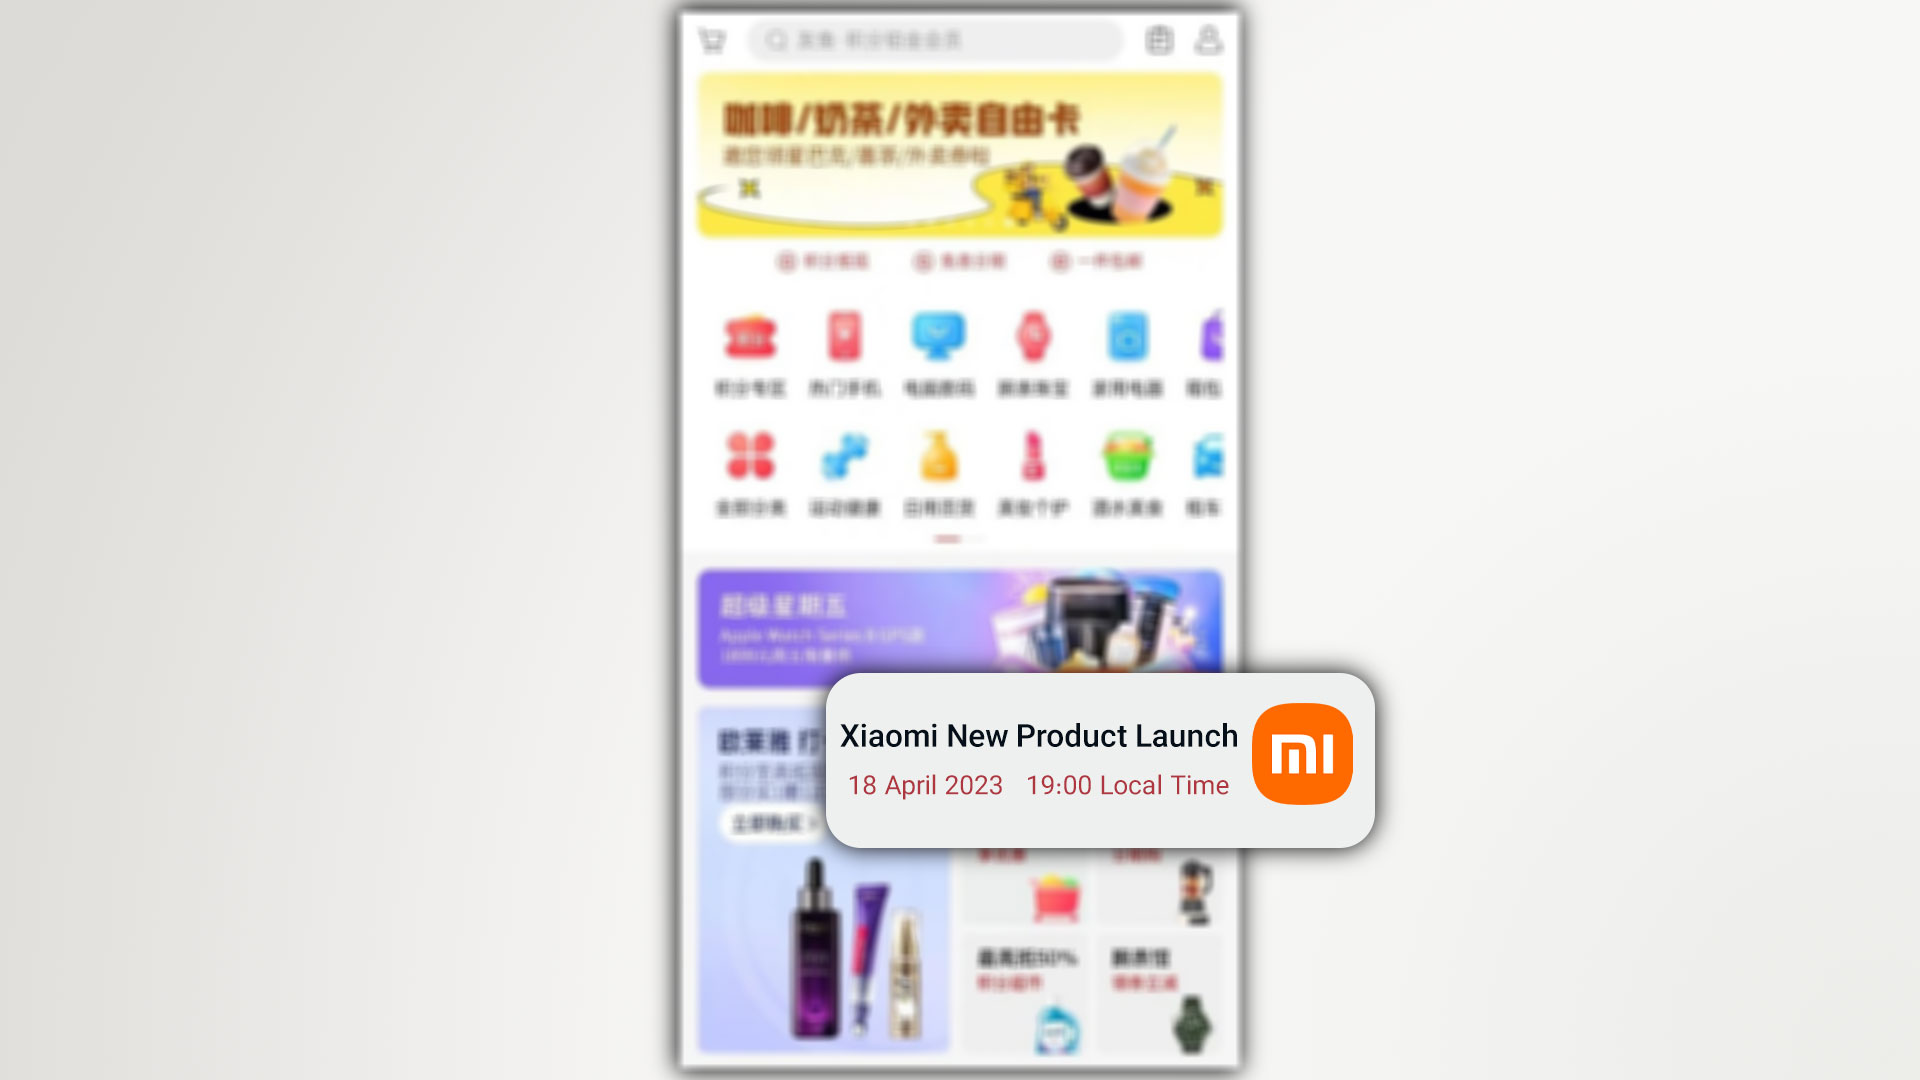 فروشگاه آنلاین چینی تاریخ عرضه محصول جدید شیائومی را اعلام کرد